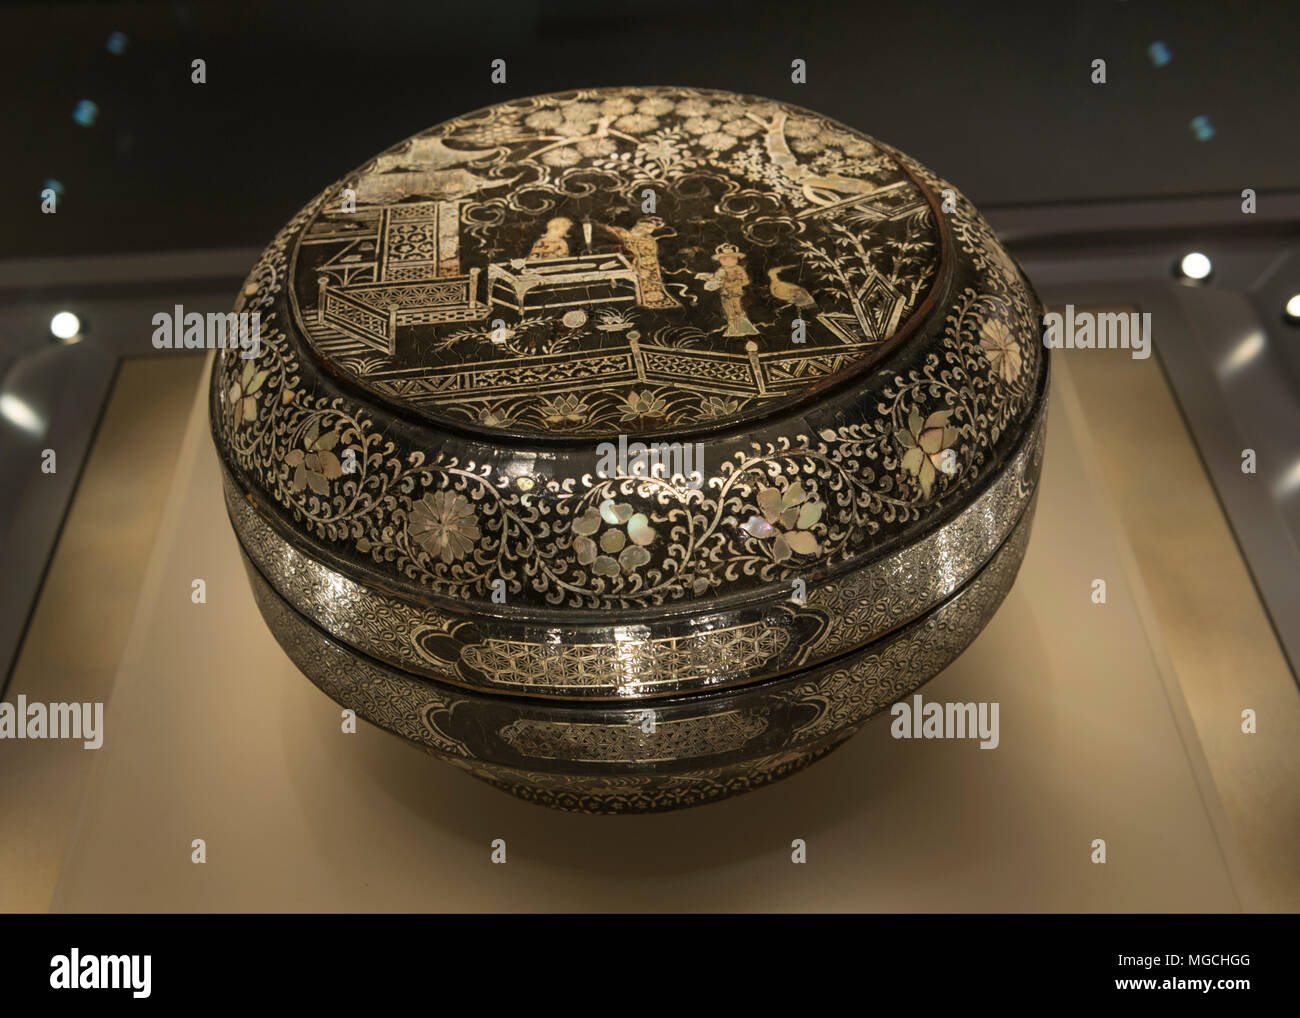 Une laque noire boîte de couture incrusté de nacre de la fin de la dynastie Song (960-1279) ou au début de la dynastie des Yuan (1279-1368), donnés par deux entrepreneurs Qiyong Bizhen Cao et Luo à Zhejiang Museum, la Chine. Banque D'Images